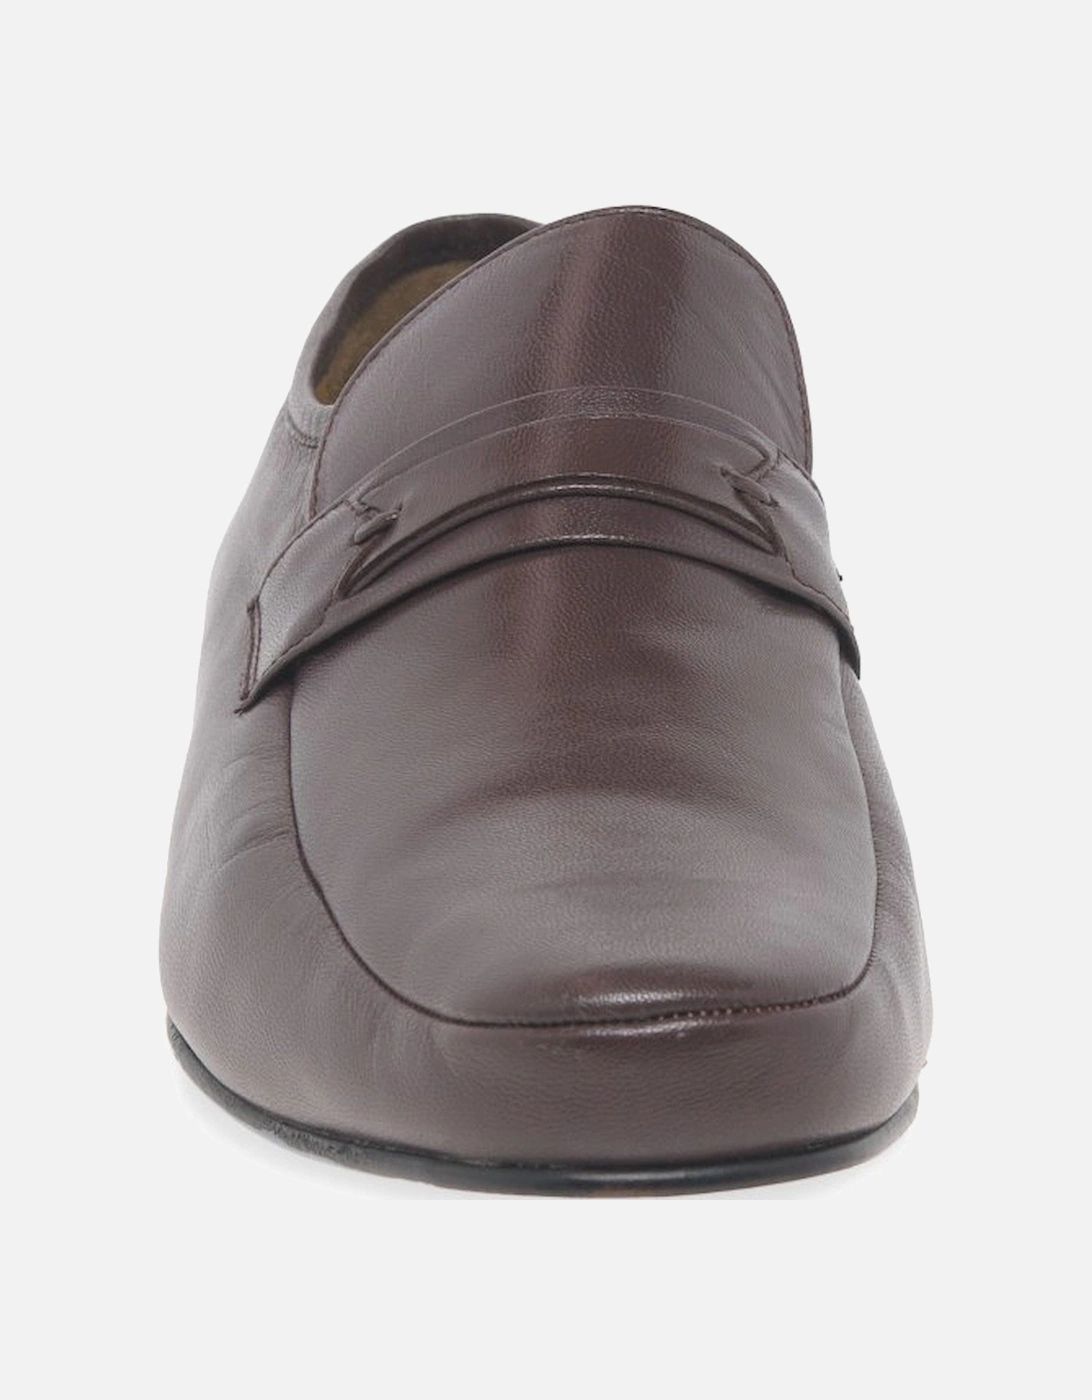 Regent Mens Slip On Formal Shoes